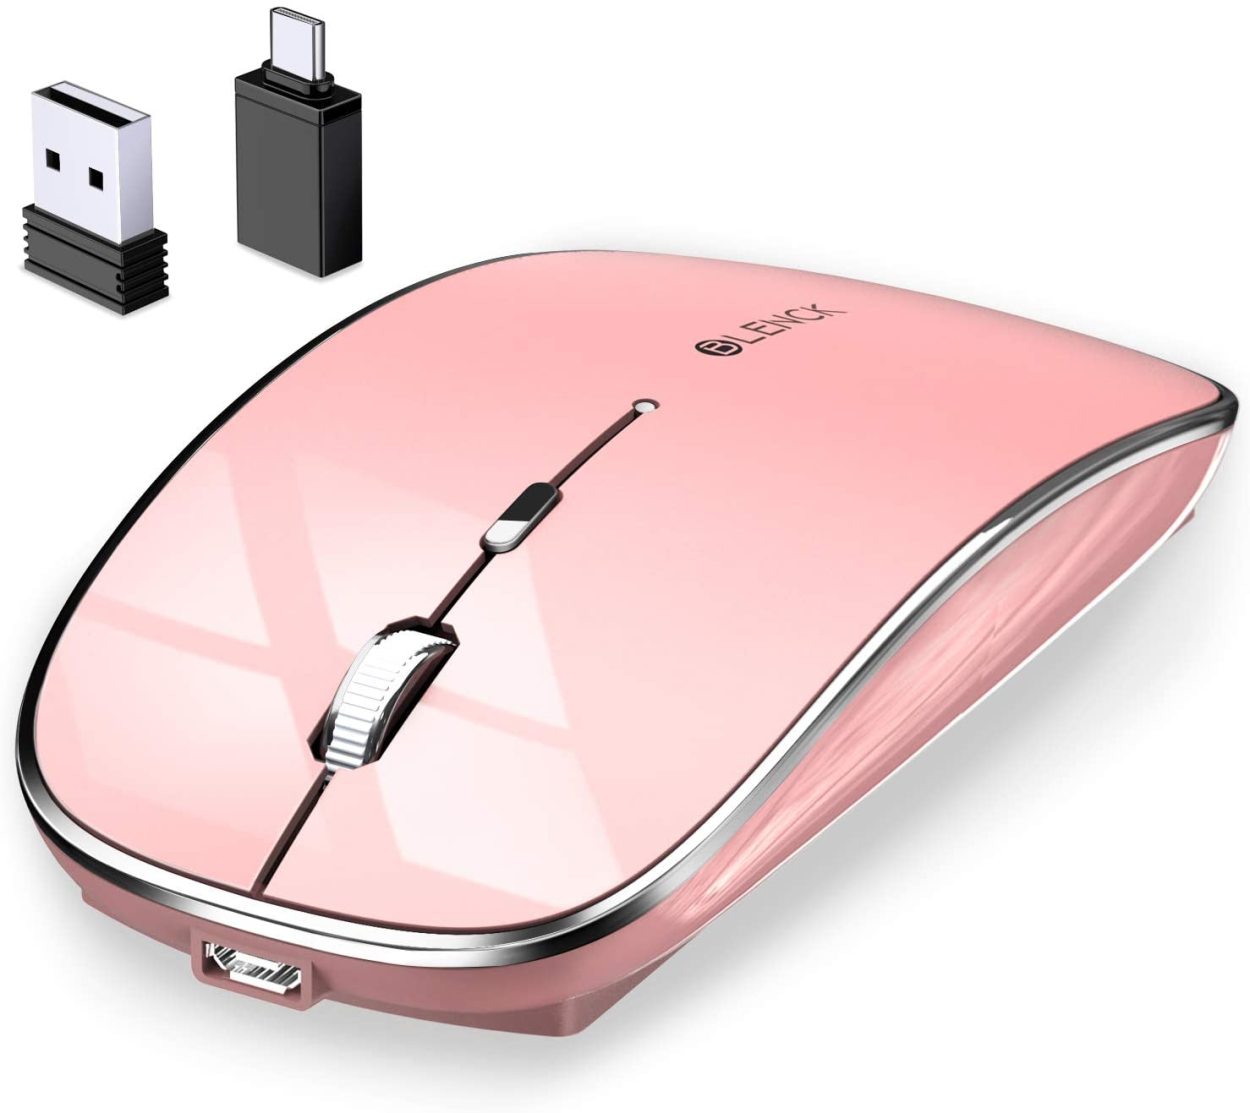 マウス 完全ワイヤレス機能 ワイヤレスマウス Bluetoothマウス Bluetooth5.1 光学式 高感度 3DPIモード Mac Windowsなど対応 ブルートゥース